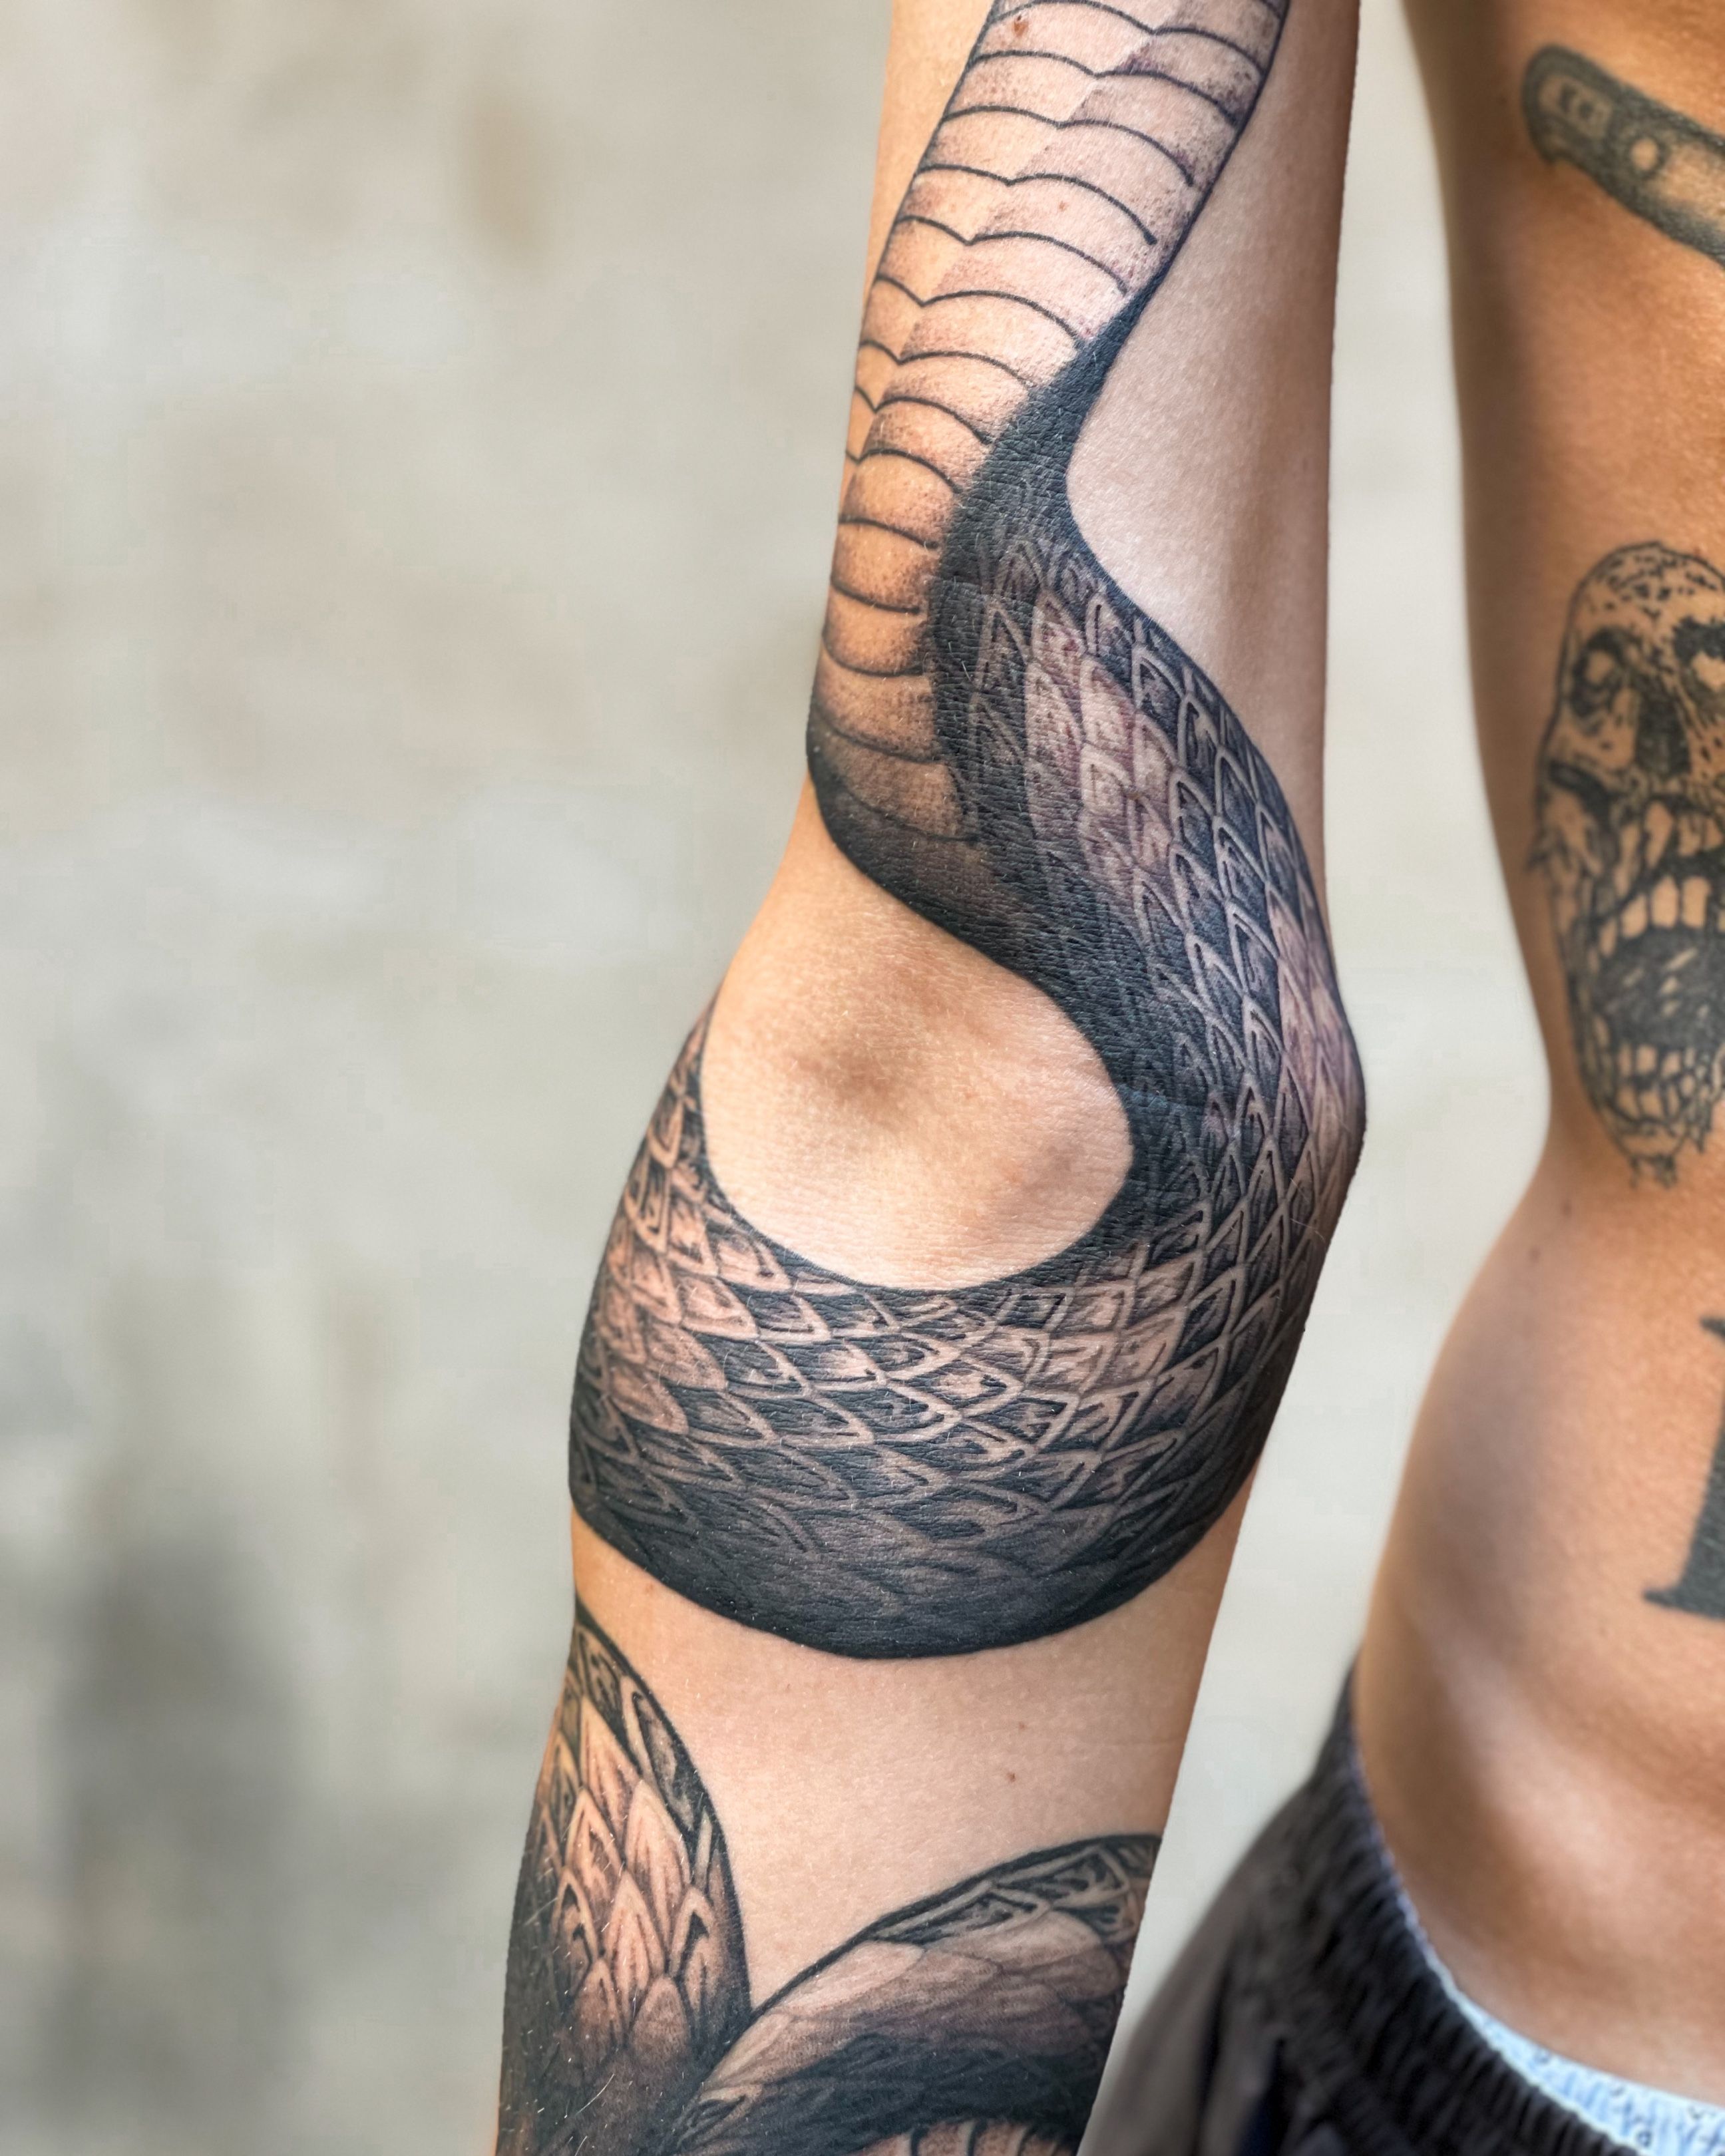 Top 41 Best Snake Arm Tattoo Ideas  2020 Inspiration Guide  LaptrinhX   News